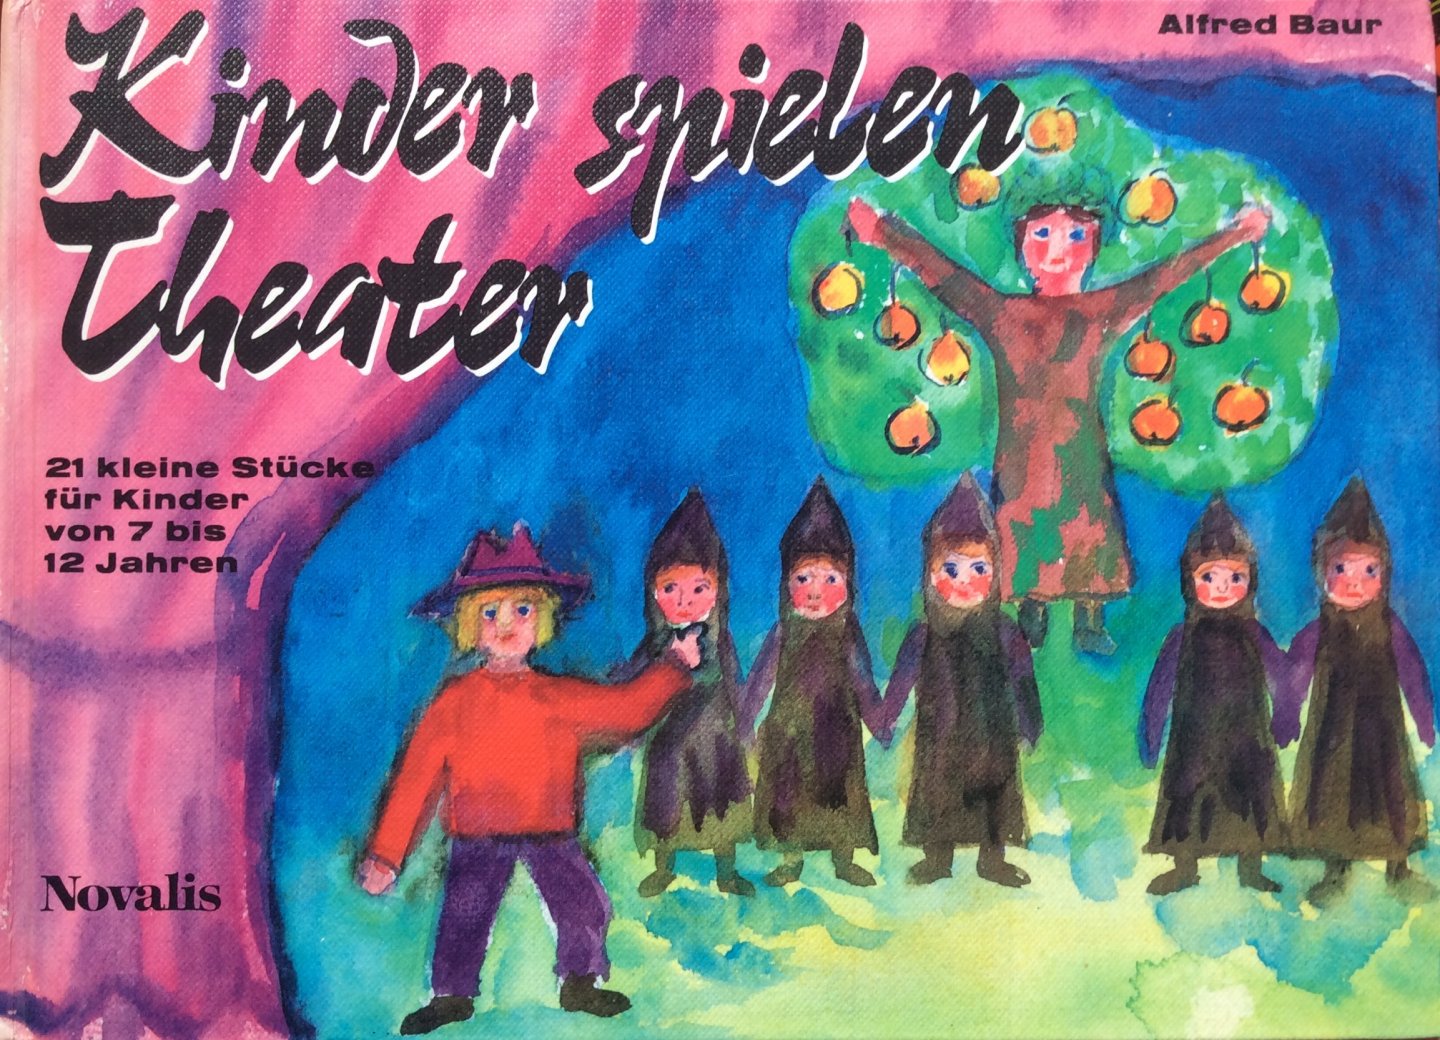 Baur, Alfred (kleine Stücke), Schaller, Erwin (Weisen) - Kinder spielen Theater; 21 kleine Stücke für Kinder von 7 bis 12 Jahren